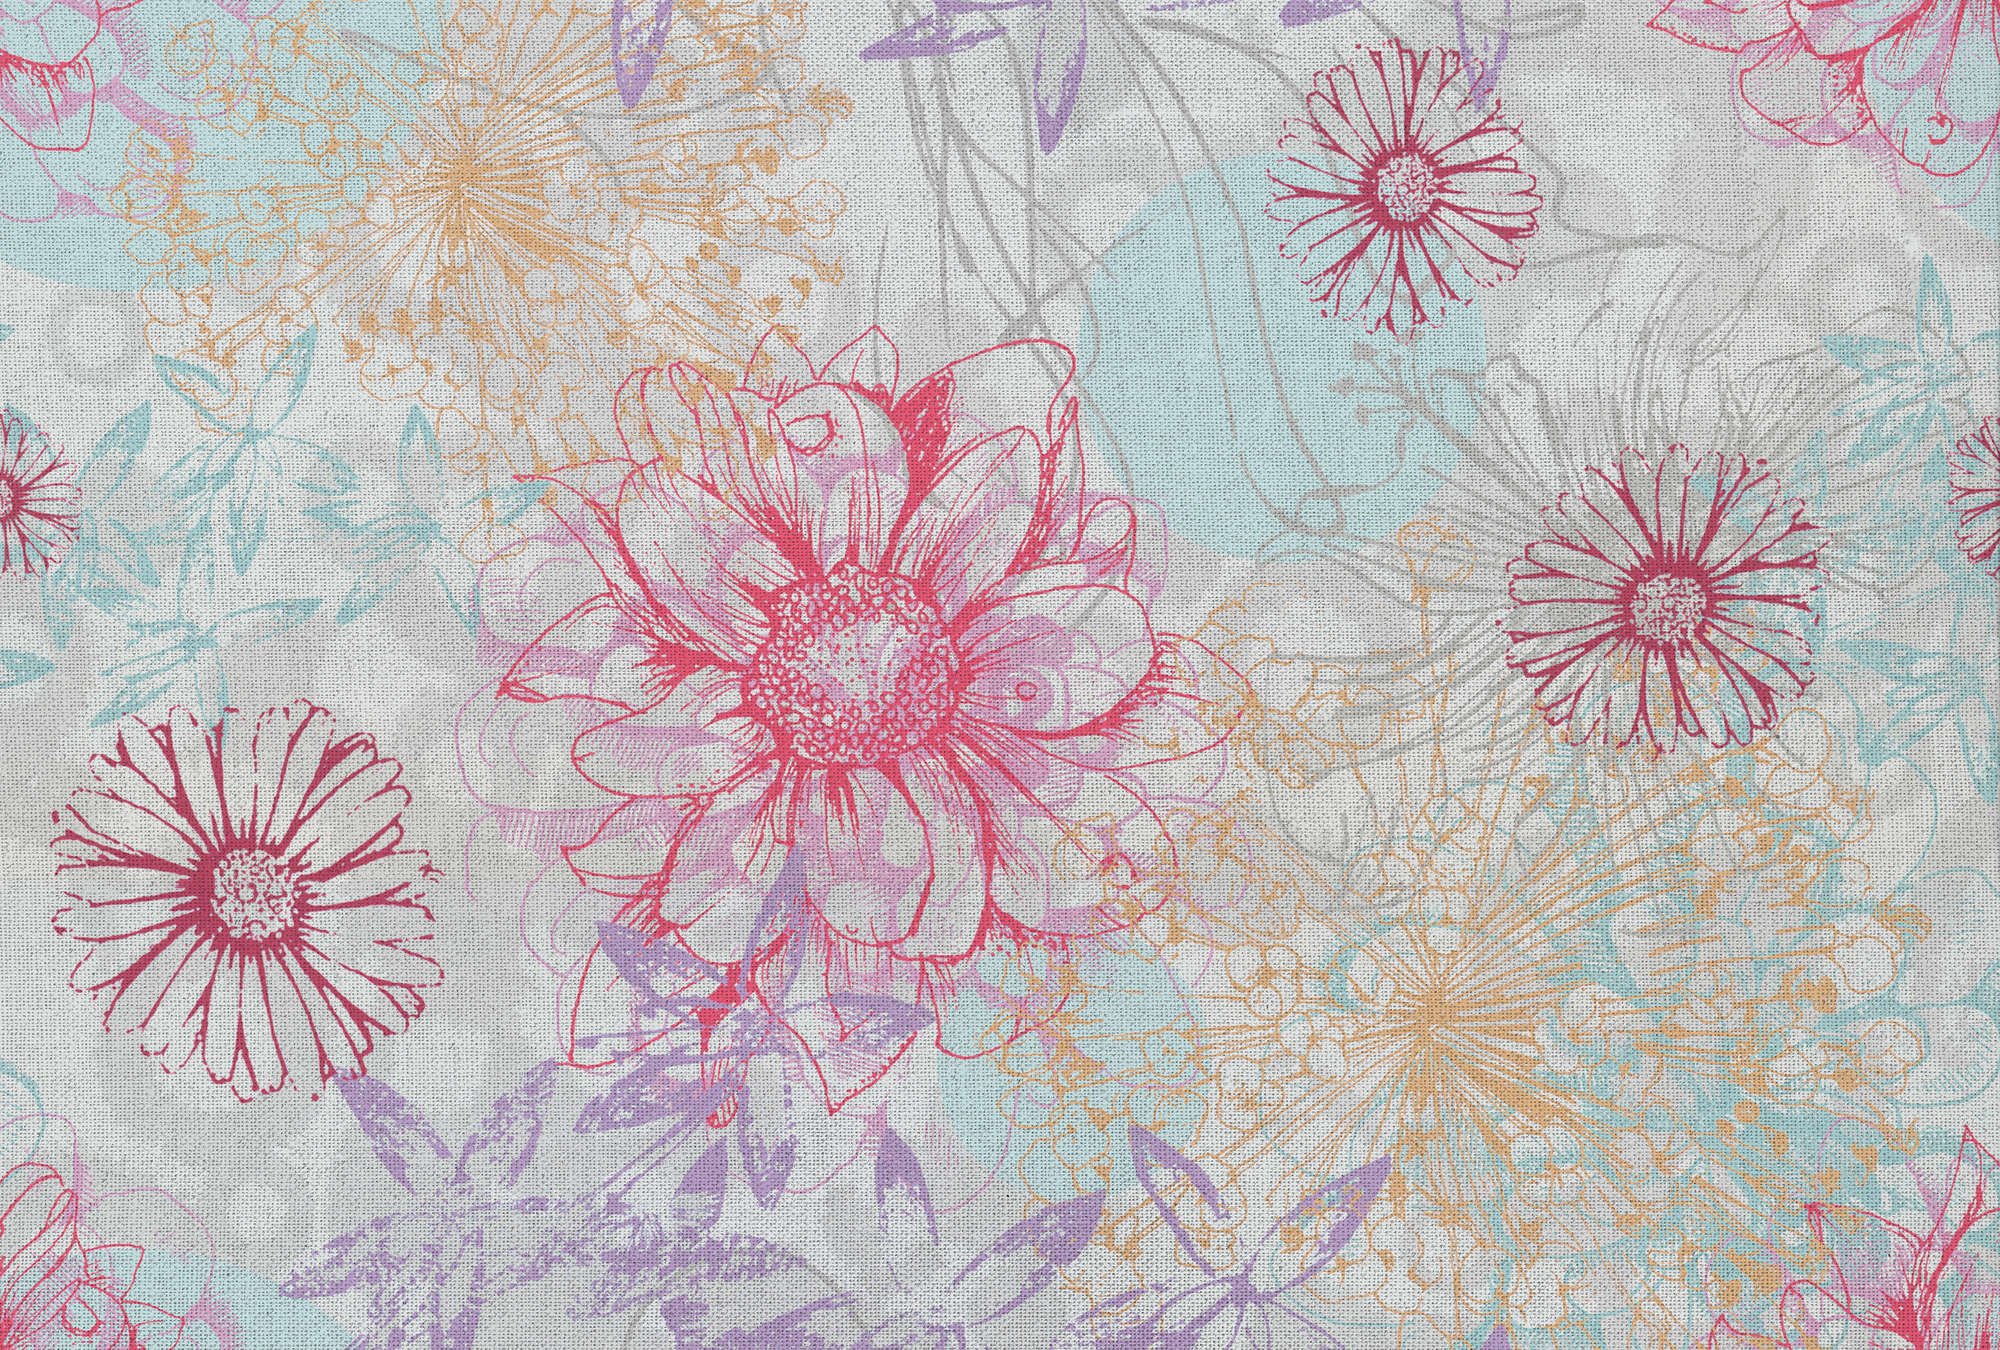             Papier peint coloré avec aspect textile & fleurs - rose, bleu, blanc
        